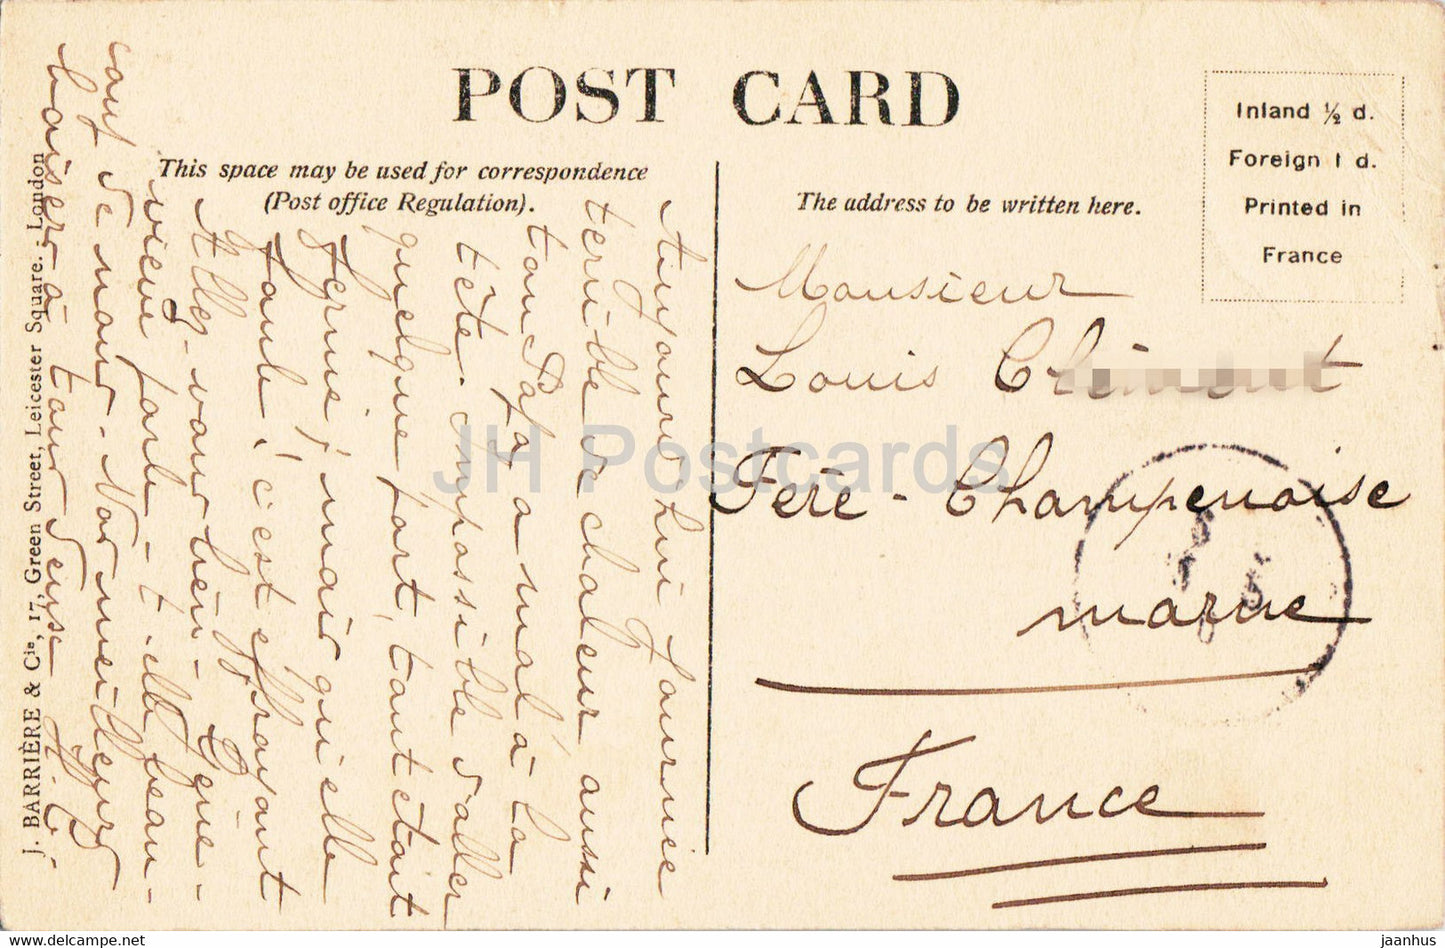 London – Der Buckingham Palace – alte Postkarte – England – 1910 – Vereinigtes Königreich – gebraucht